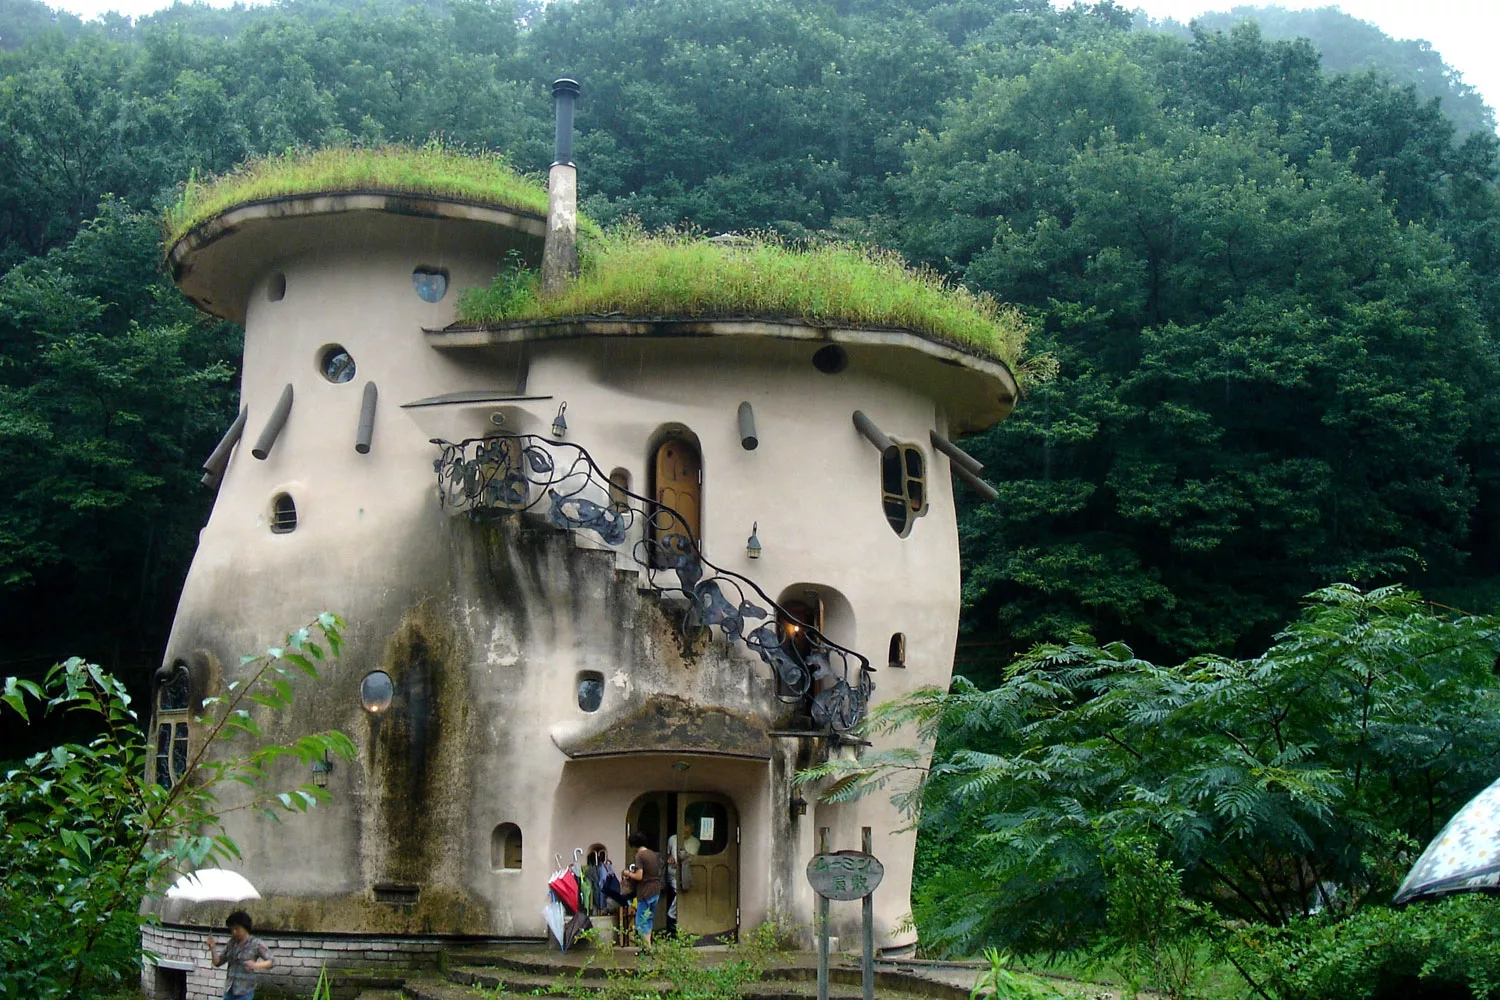 Foto della casa a forma di fungo creata in Giappone